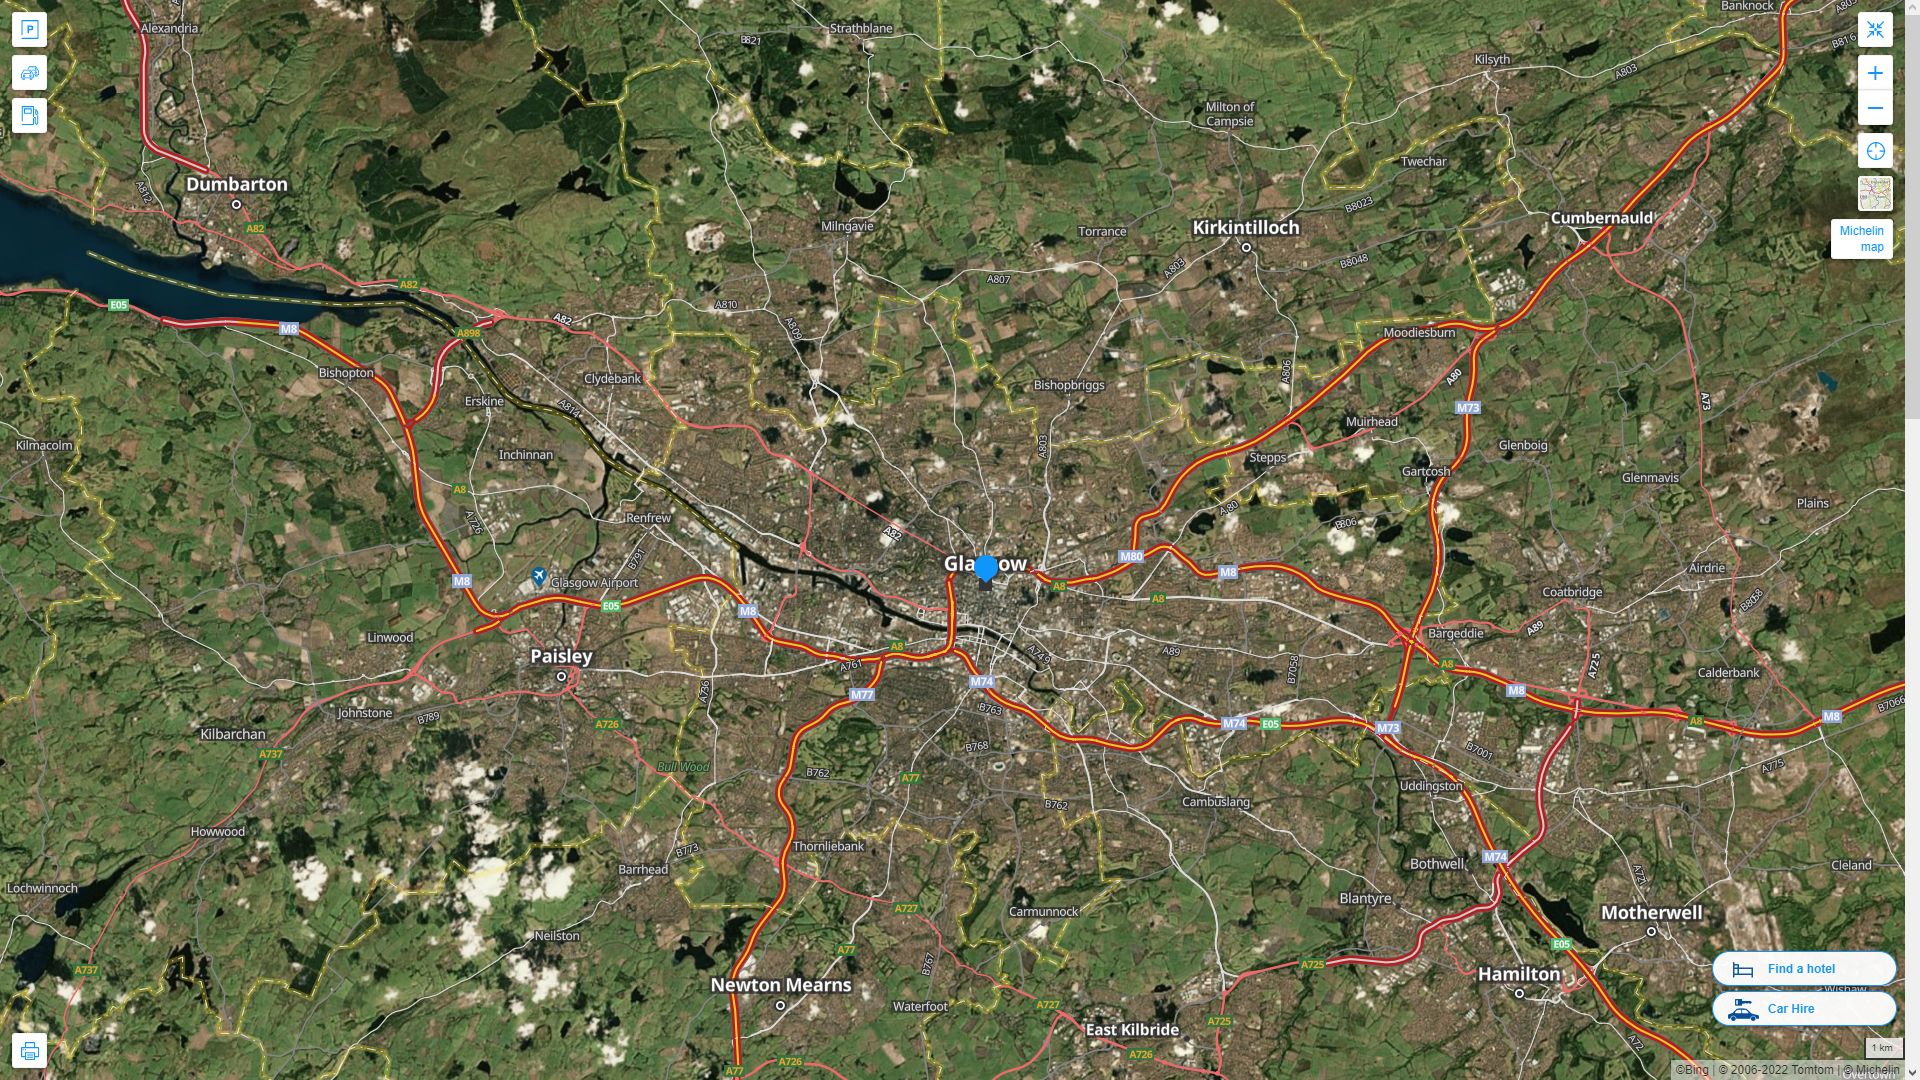 Glasgow Royaume Uni Autoroute et carte routiere avec vue satellite